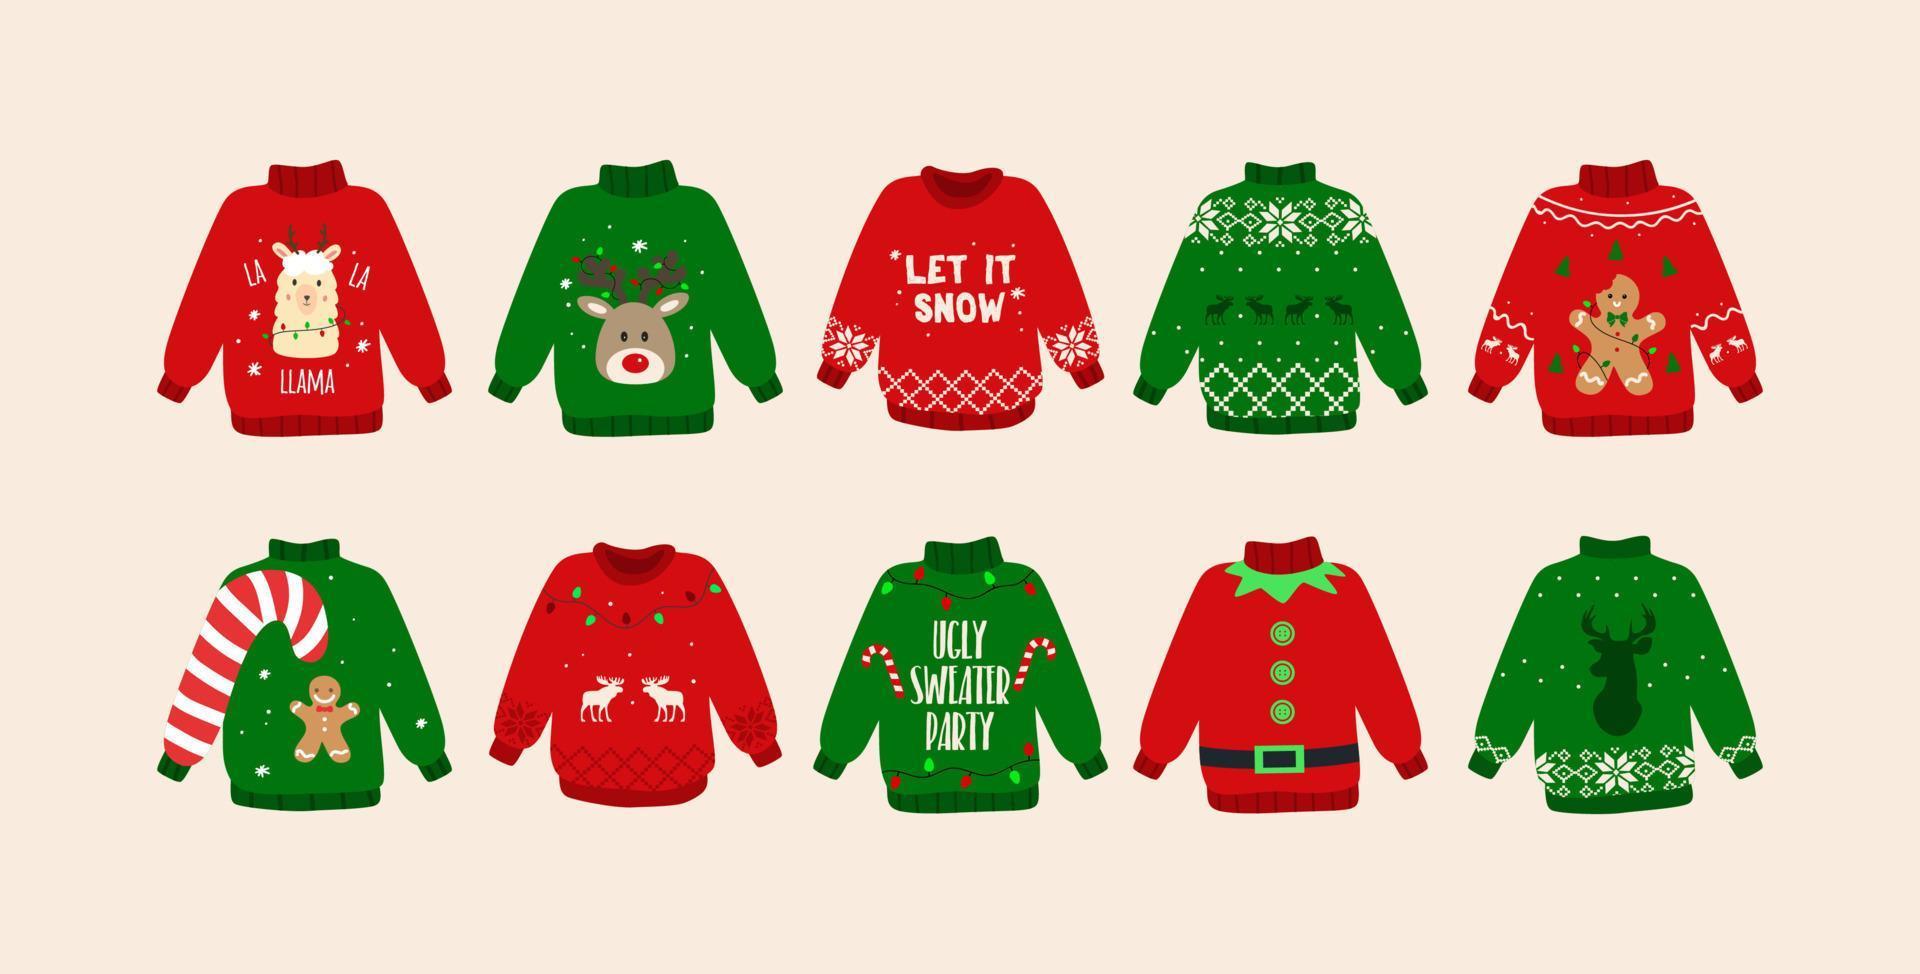 Weihnachten hässliche Pullover Set. süße Pullover-Doodles. isoliert. Vektor